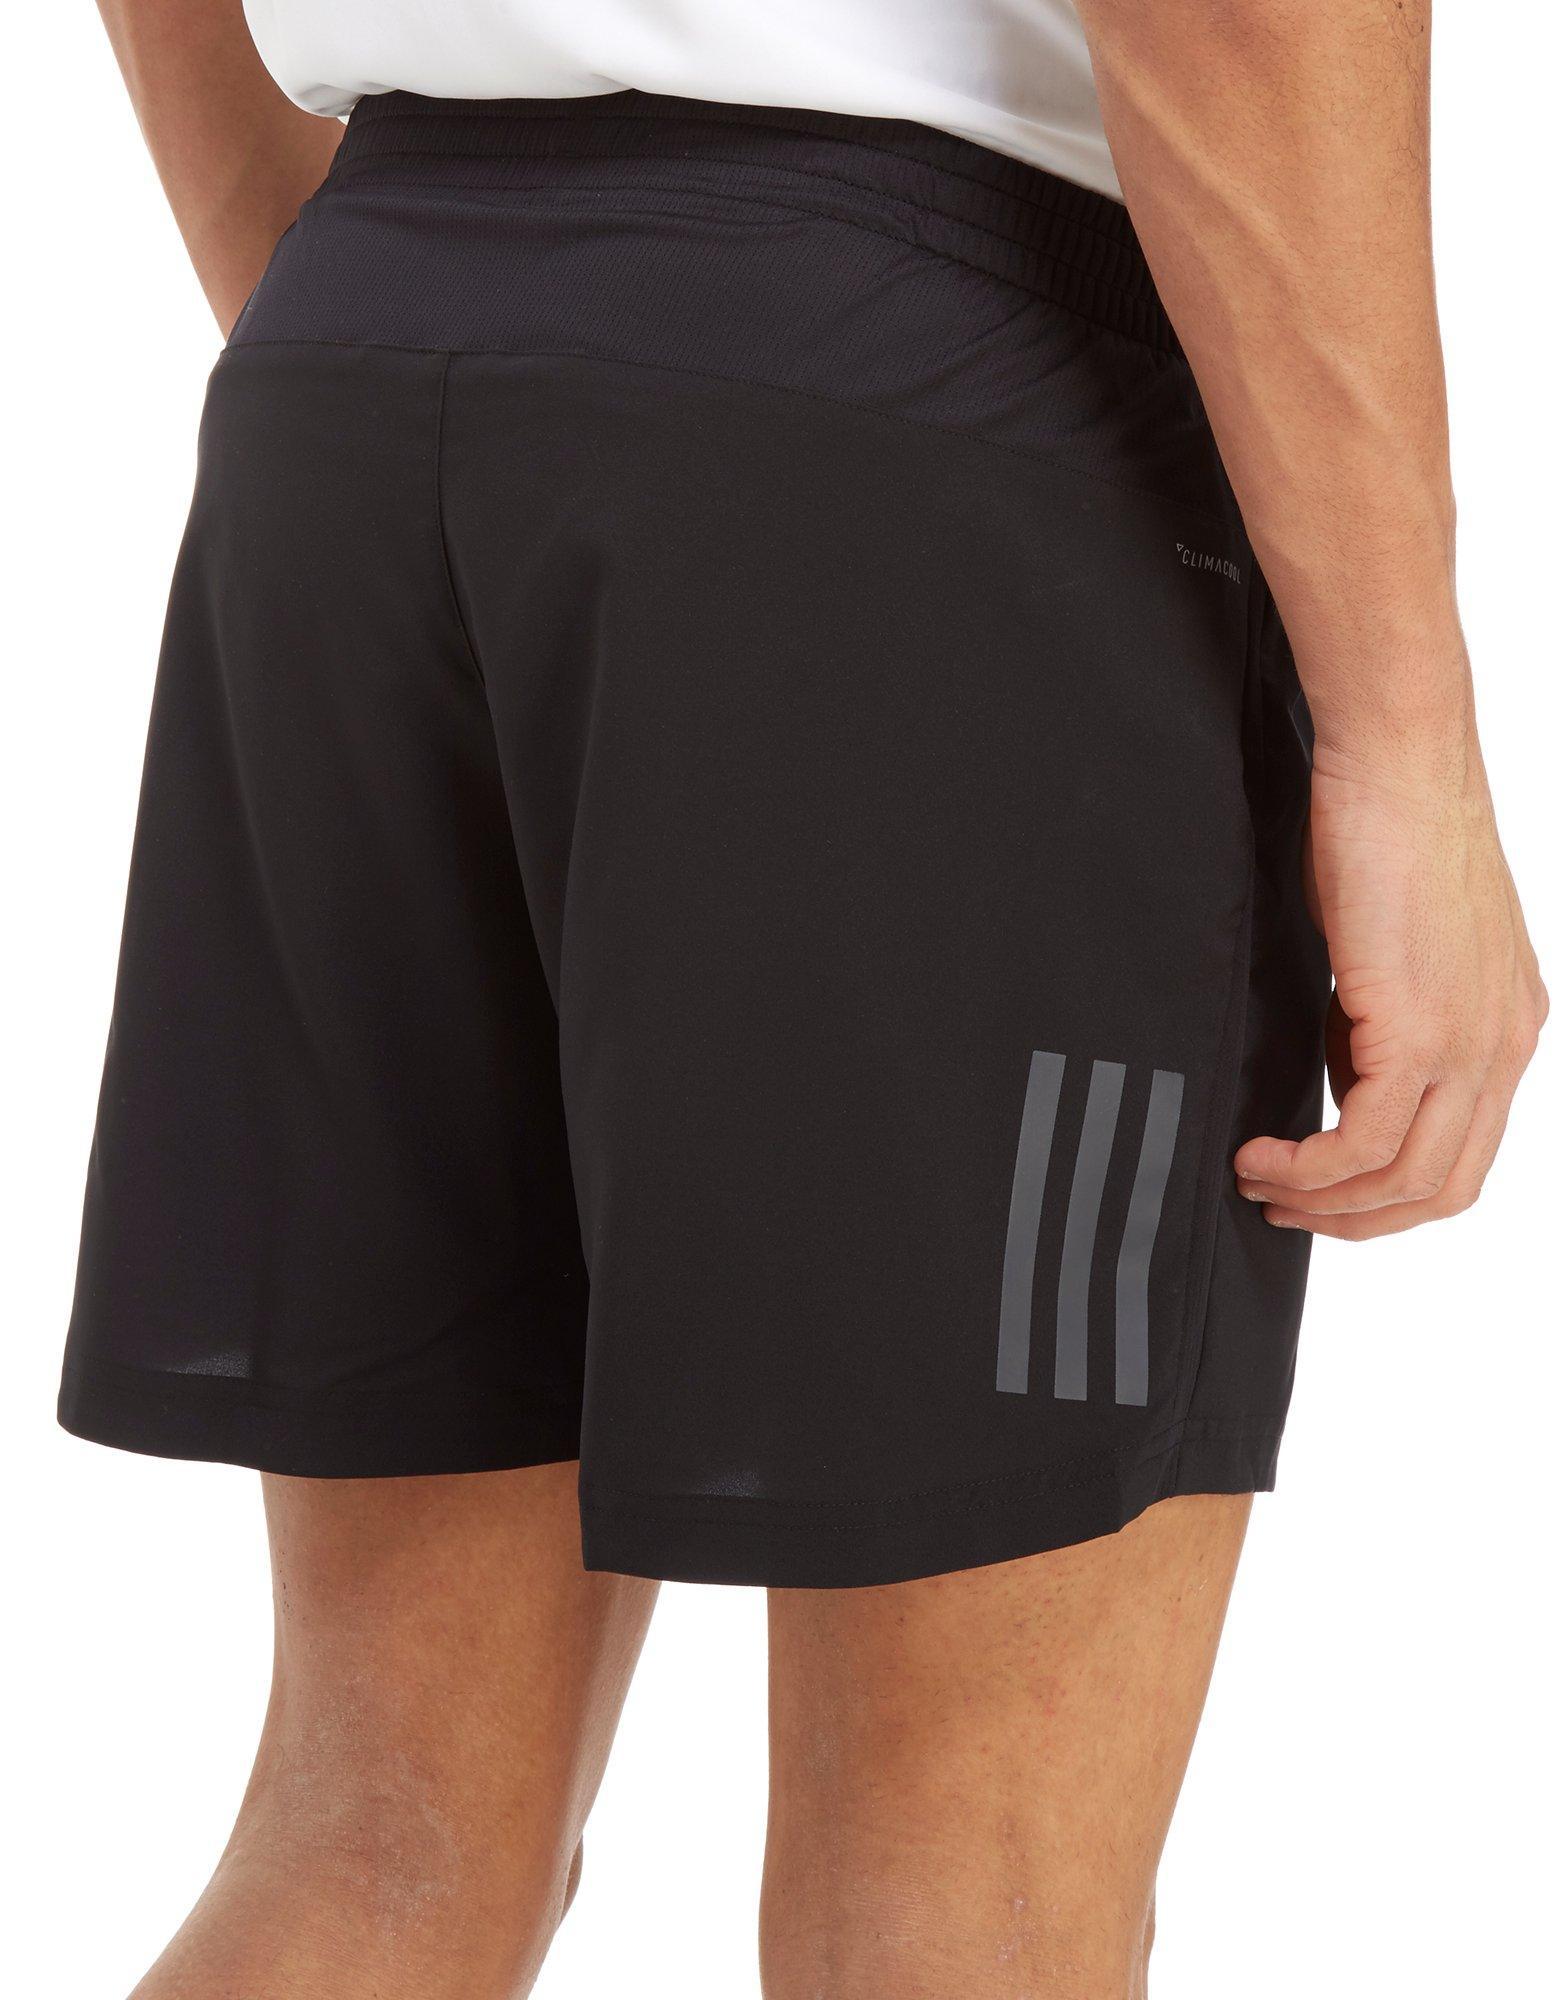 adidas 7 inch shorts